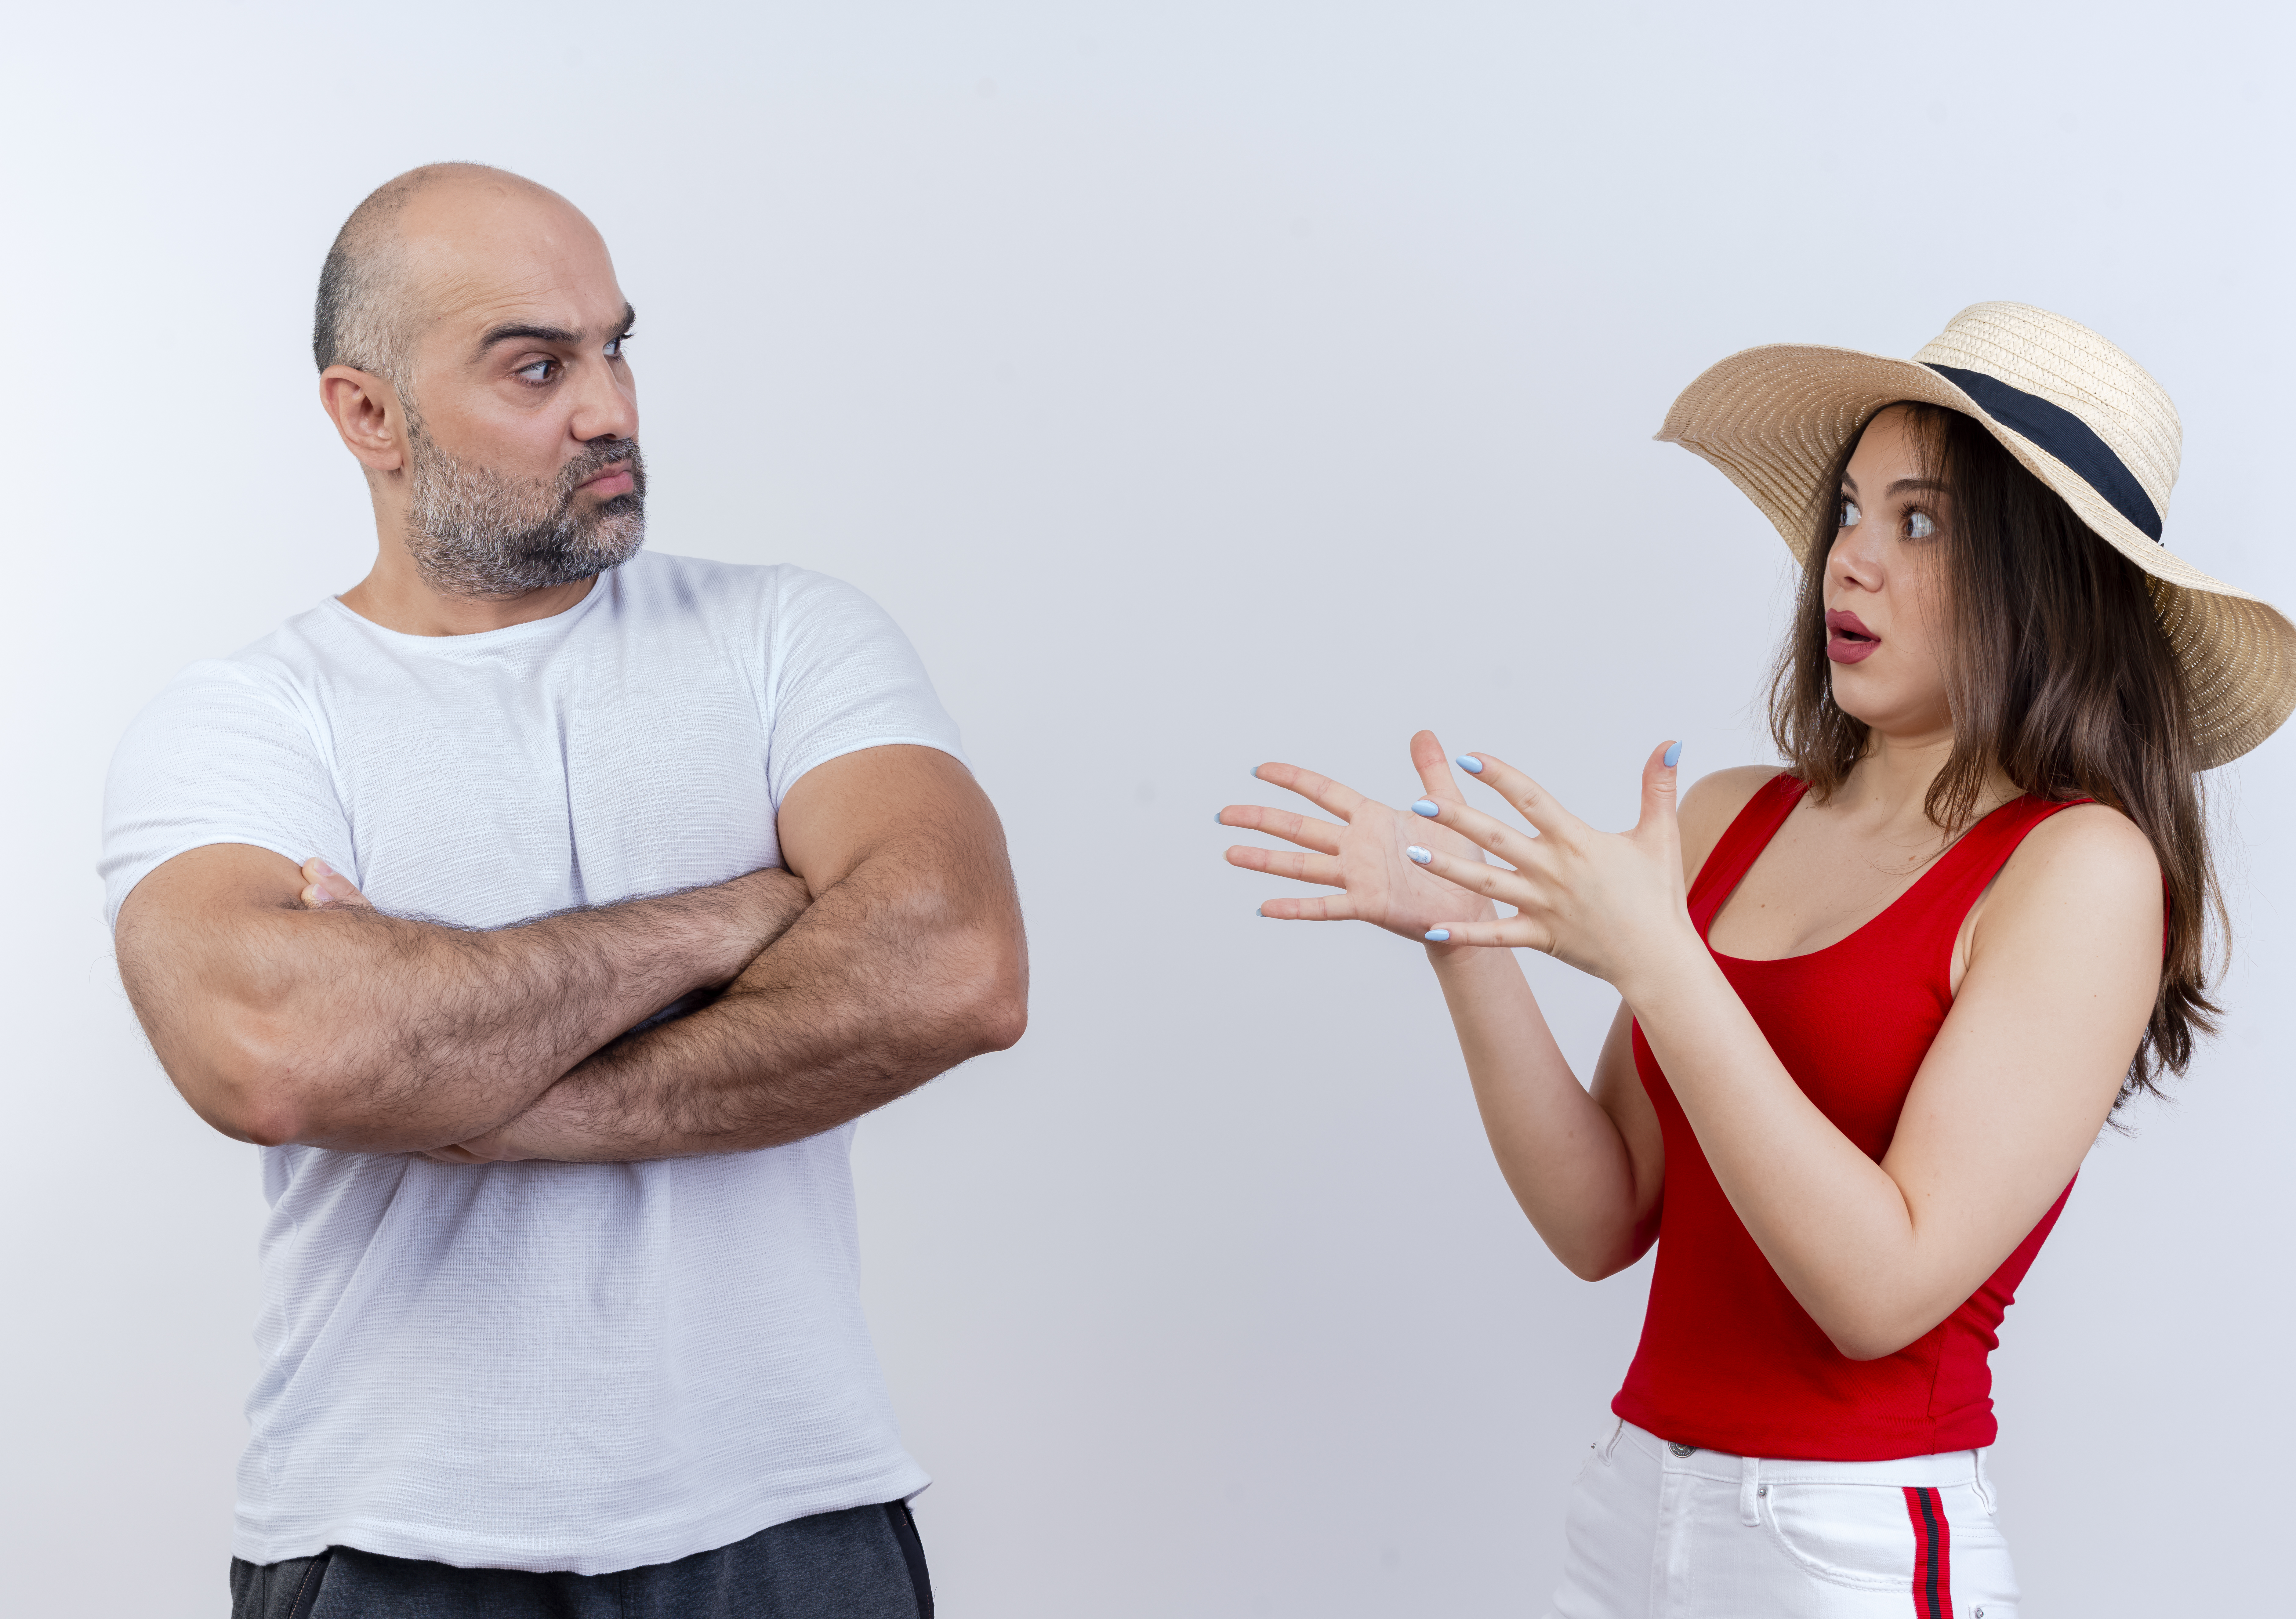 Homme montrant sa désapprobation à une femme portant un haut et un chapeau rouges | Source : stockking on Freepik